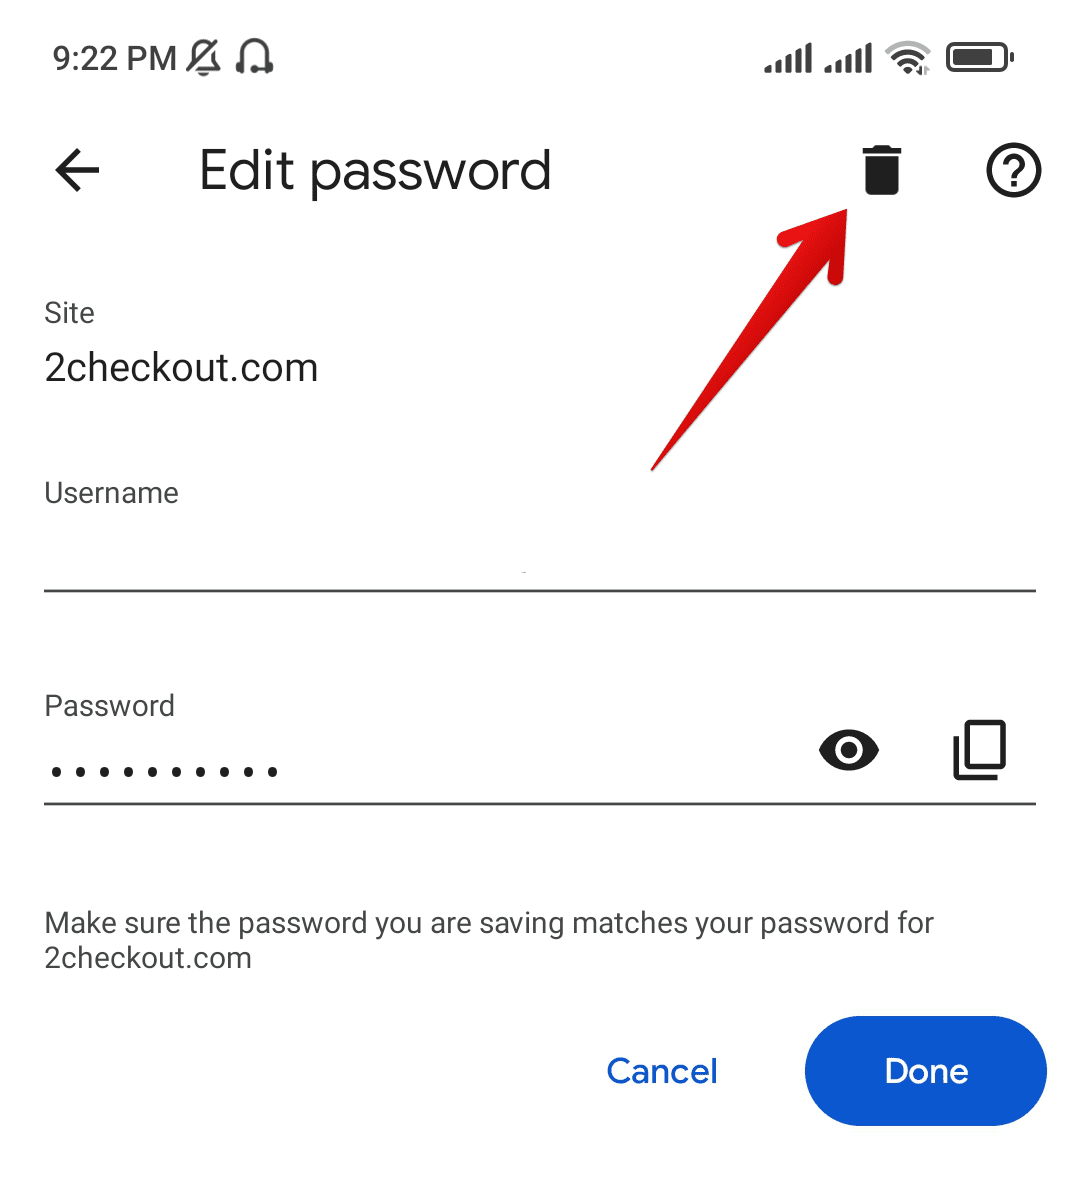 Deleting The Password